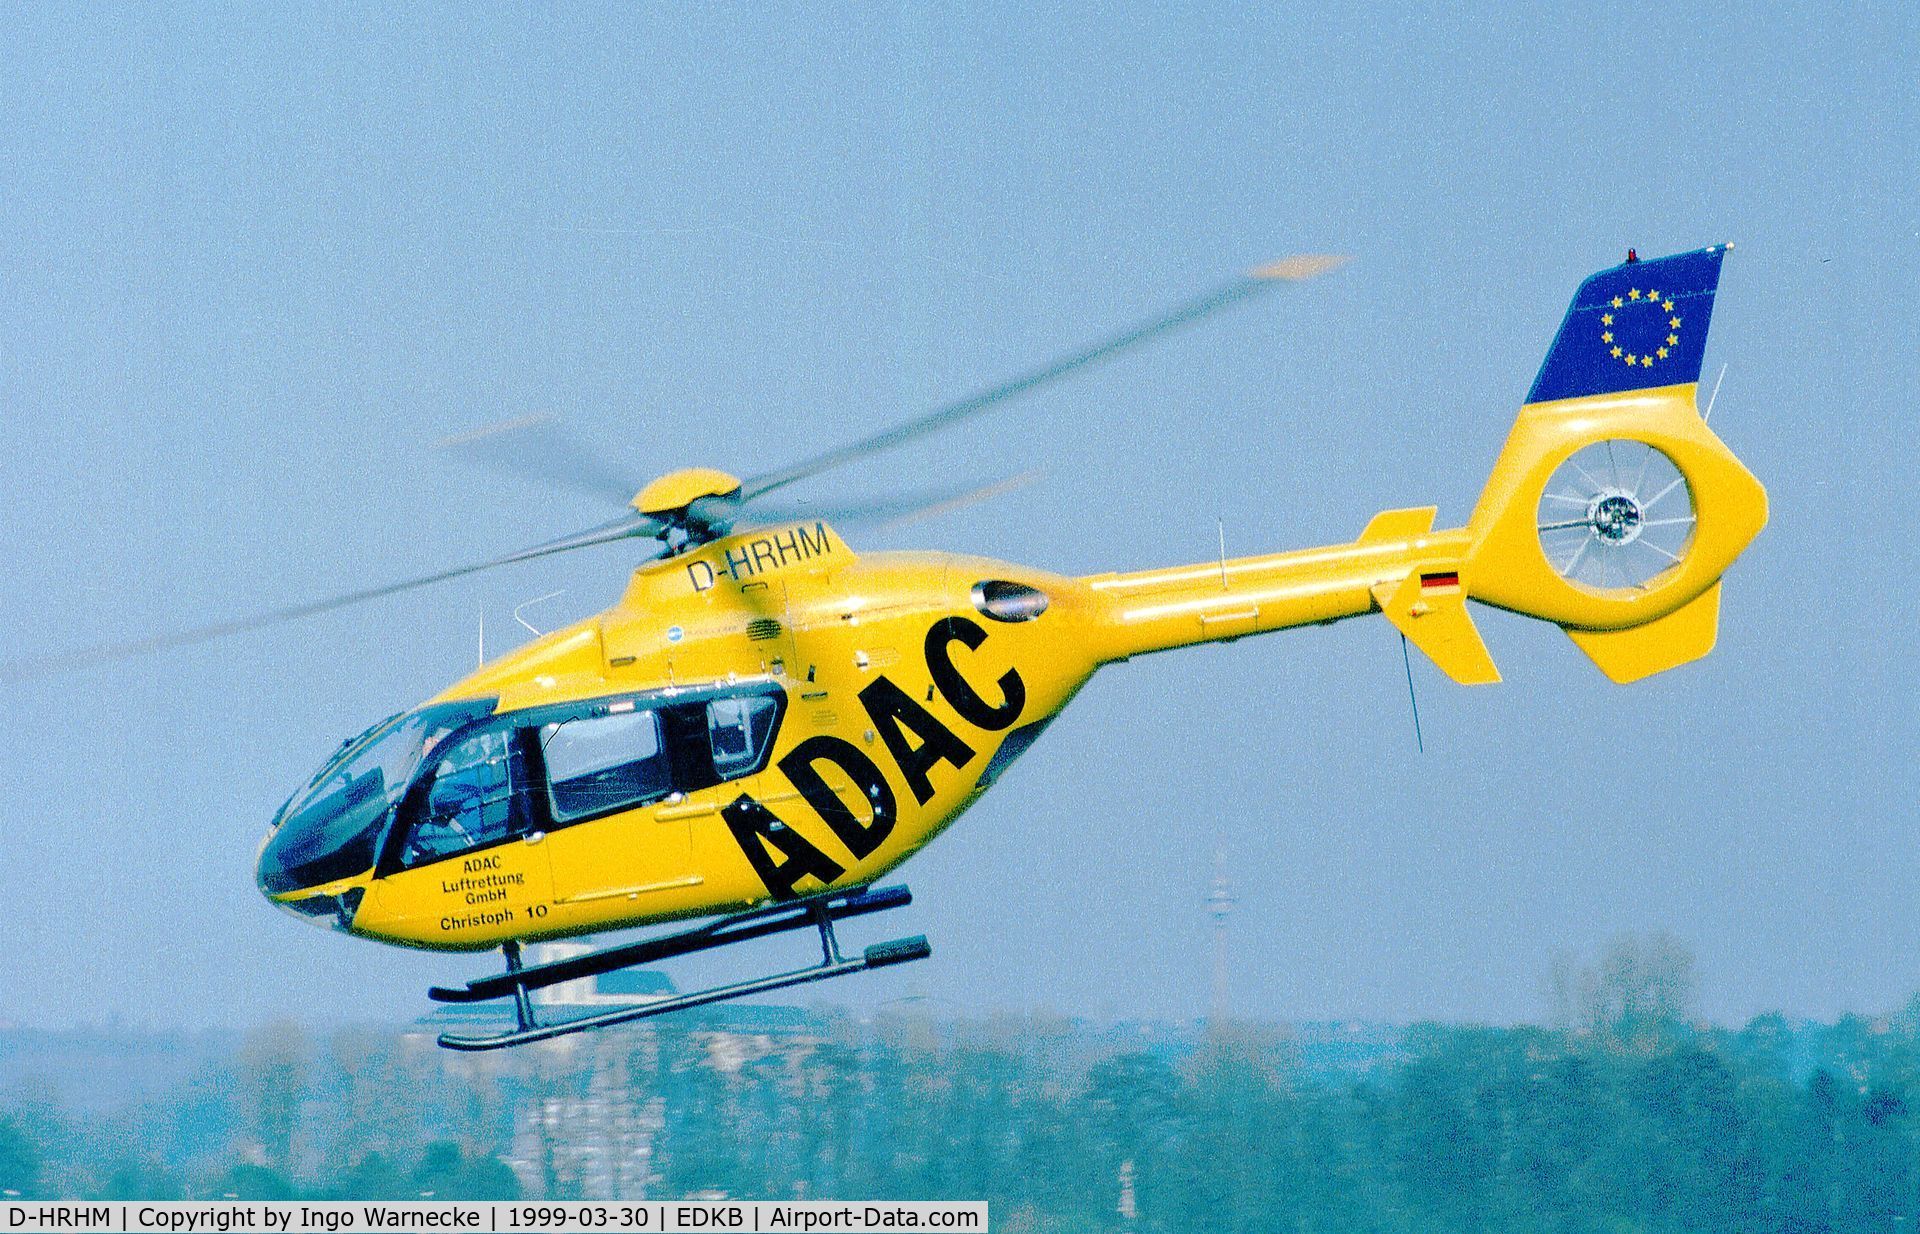 D-HRHM, 1997 Eurocopter EC-135T-1 C/N 0027, Eurocopter EC135T-1 'Christoph 10' of ADAC Luftrettung (EMS) at Bonn-Hangelar airfield